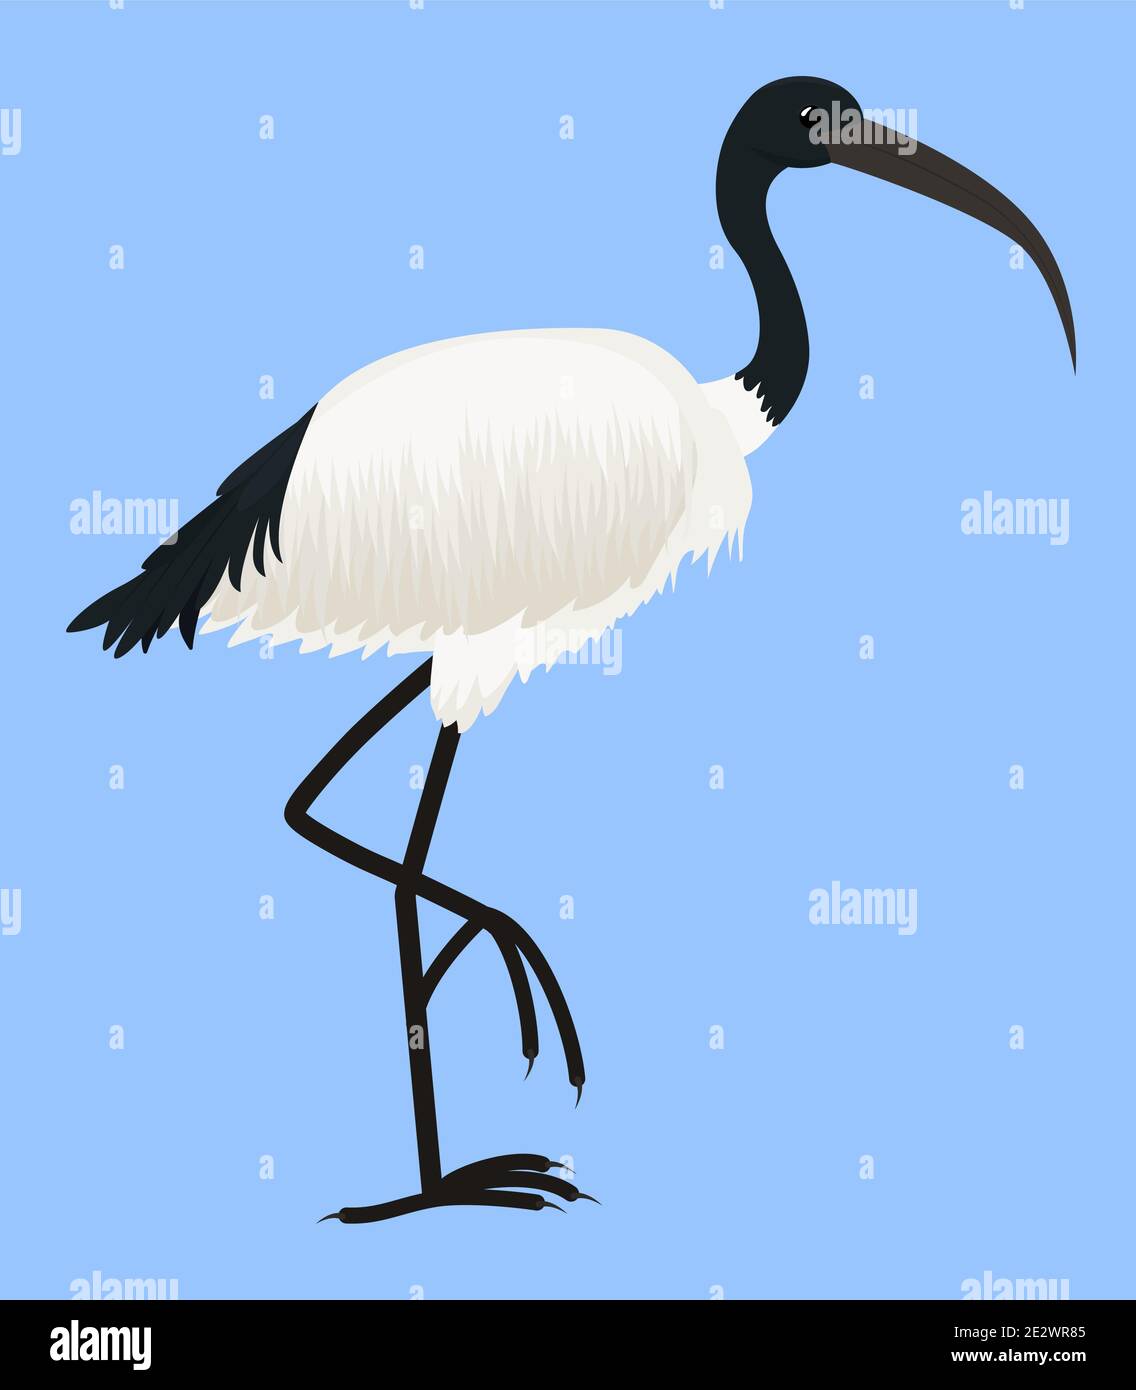 Cartoon Vektor-Symbol von Ibis isoliert auf blau. Heiliges Vogel Ägyptens, mit langen Beinen und schmalem Schnabel. Tropische afrikanische Fauna Stock Vektor